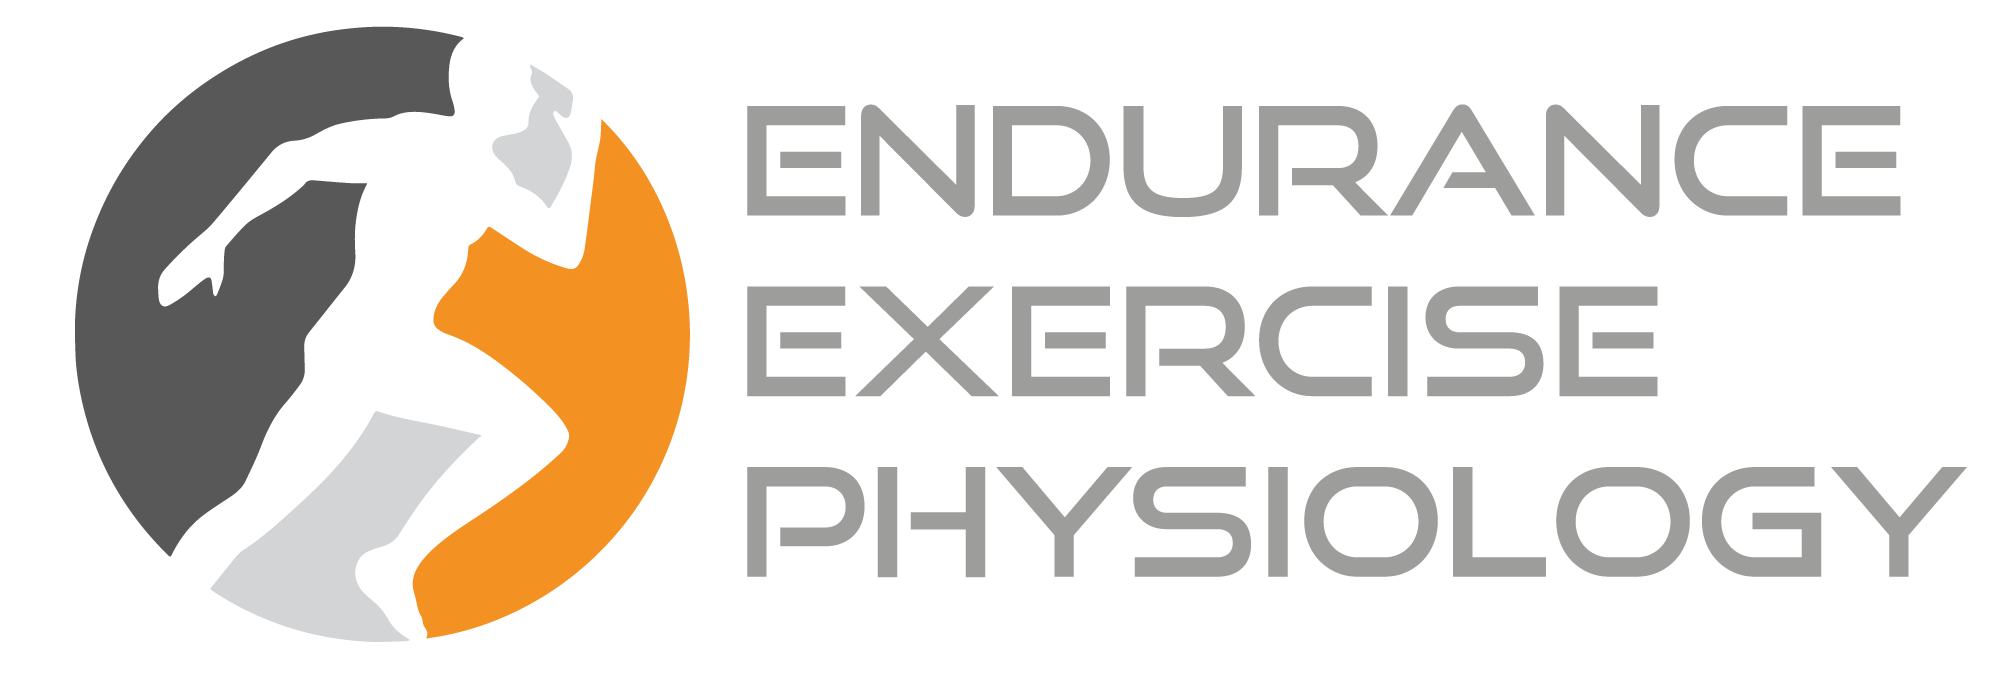 Endurance Exercise Physiology